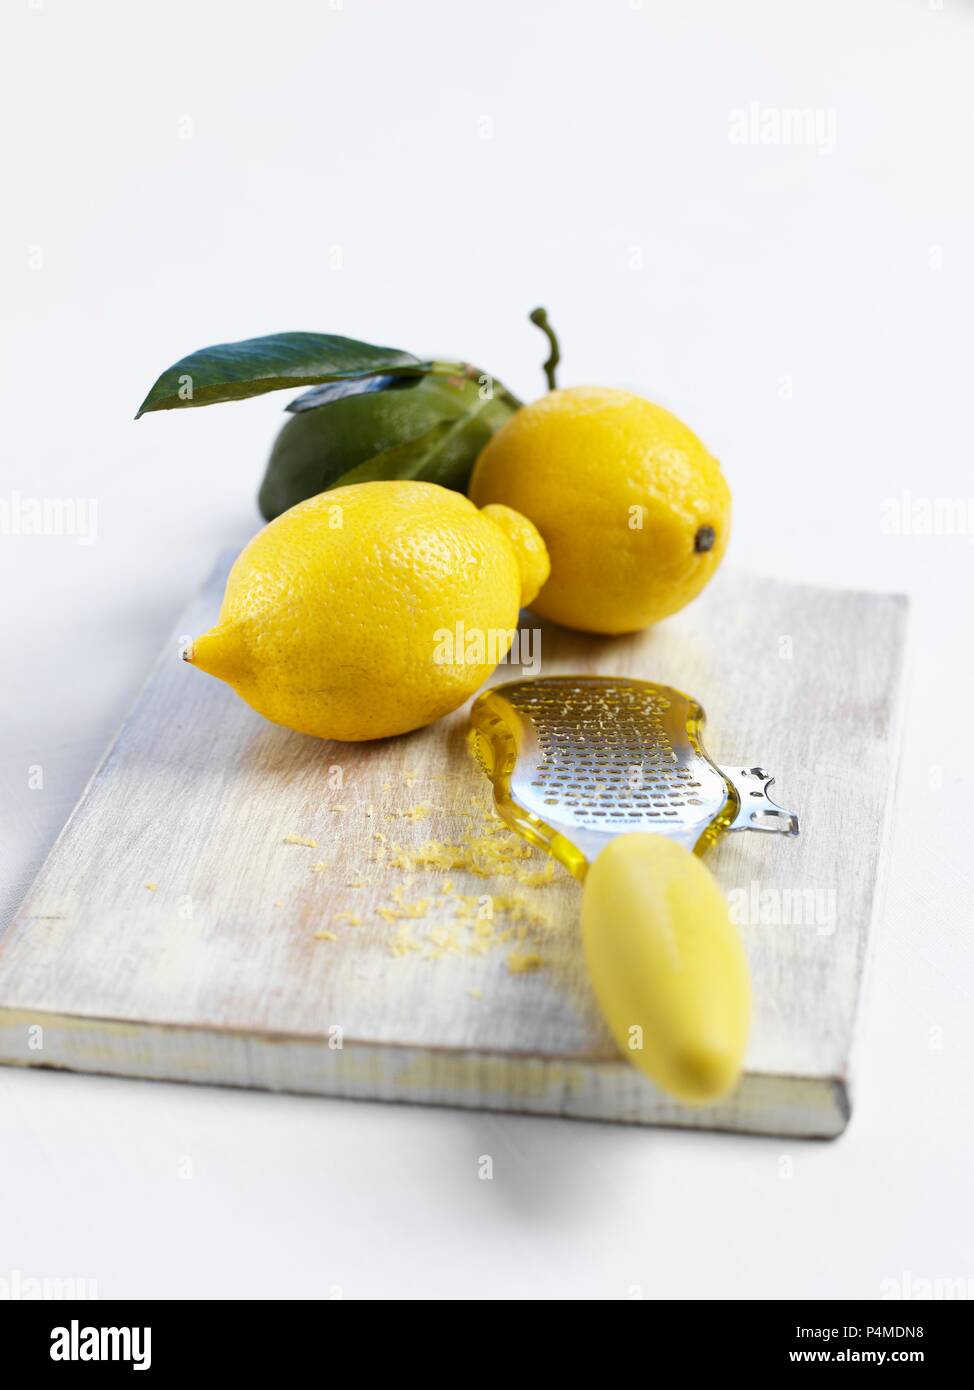 Les citrons et une râpe à zeste de citron Banque D'Images